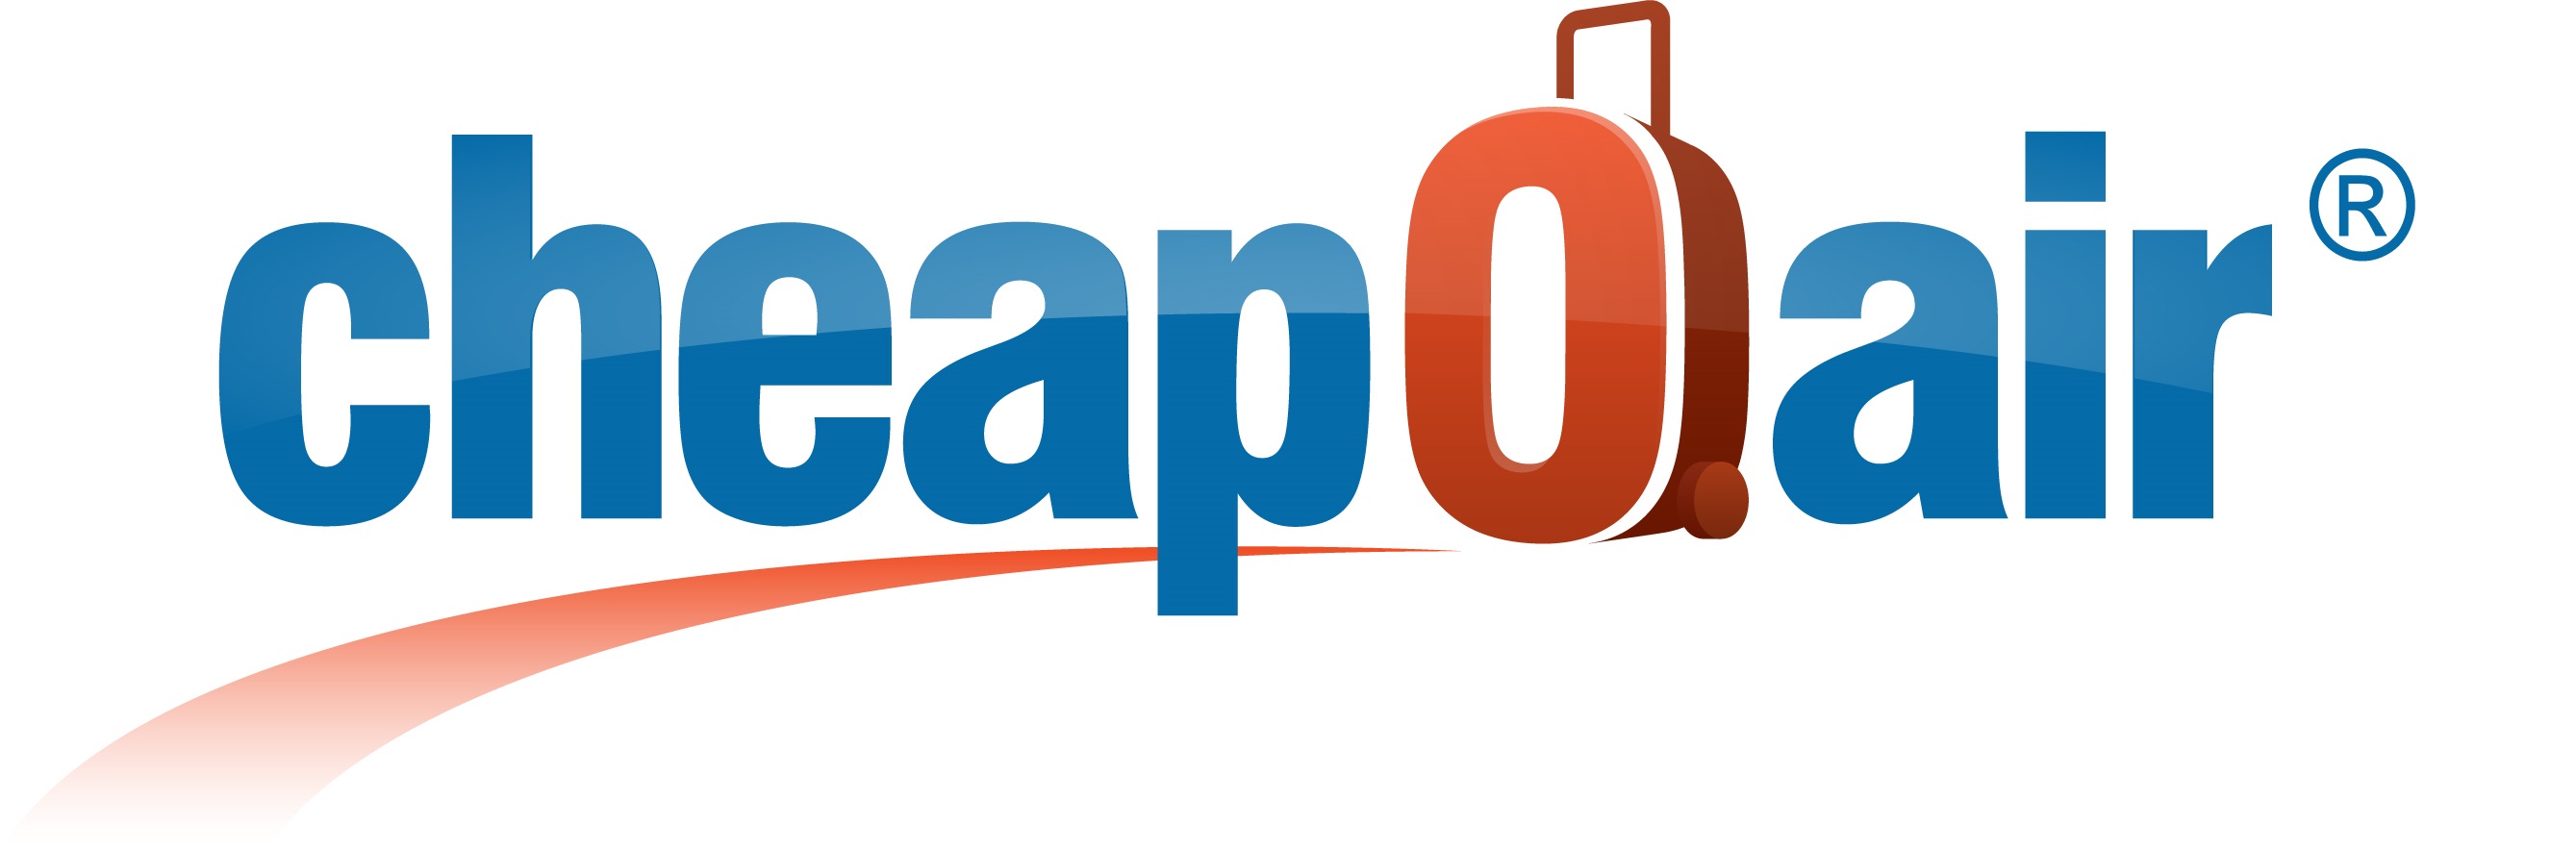 Αποτέλεσμα εικόνας για CheapOair leads travel industry by offering Android Pay capabilities